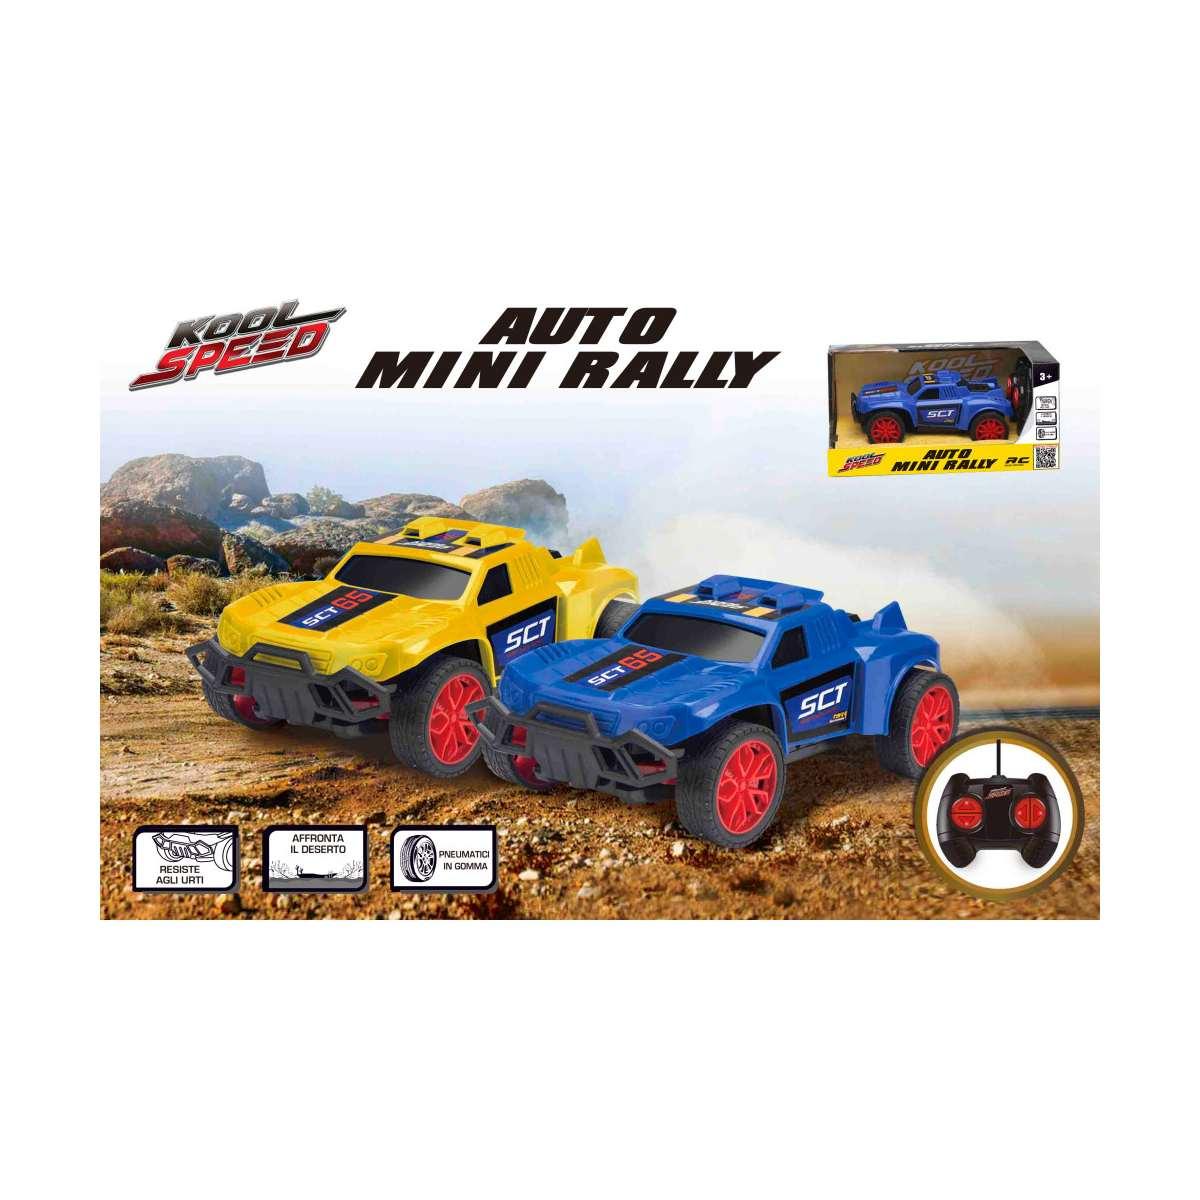 Auto r/c mini rally 2 colori assortiti